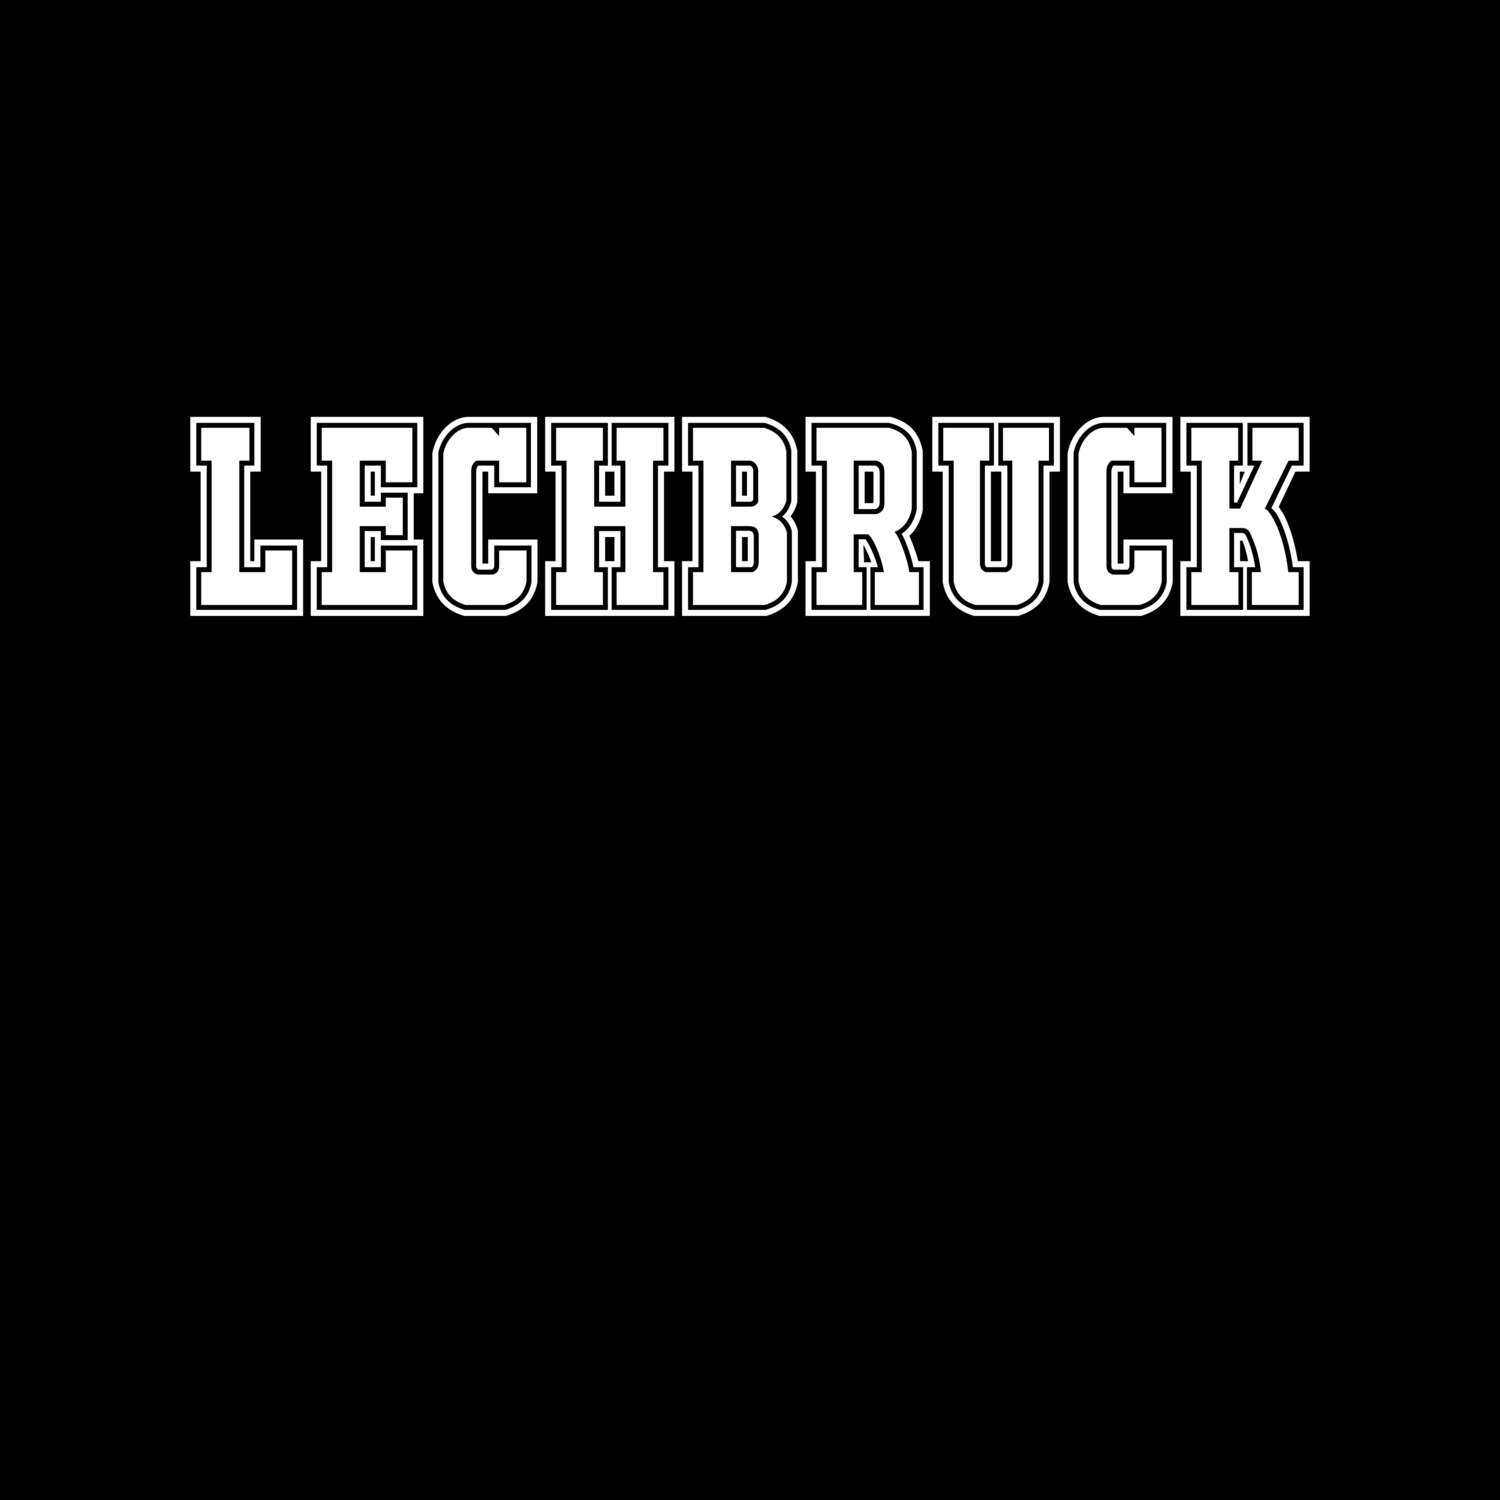 Lechbruck T-Shirt »Classic«